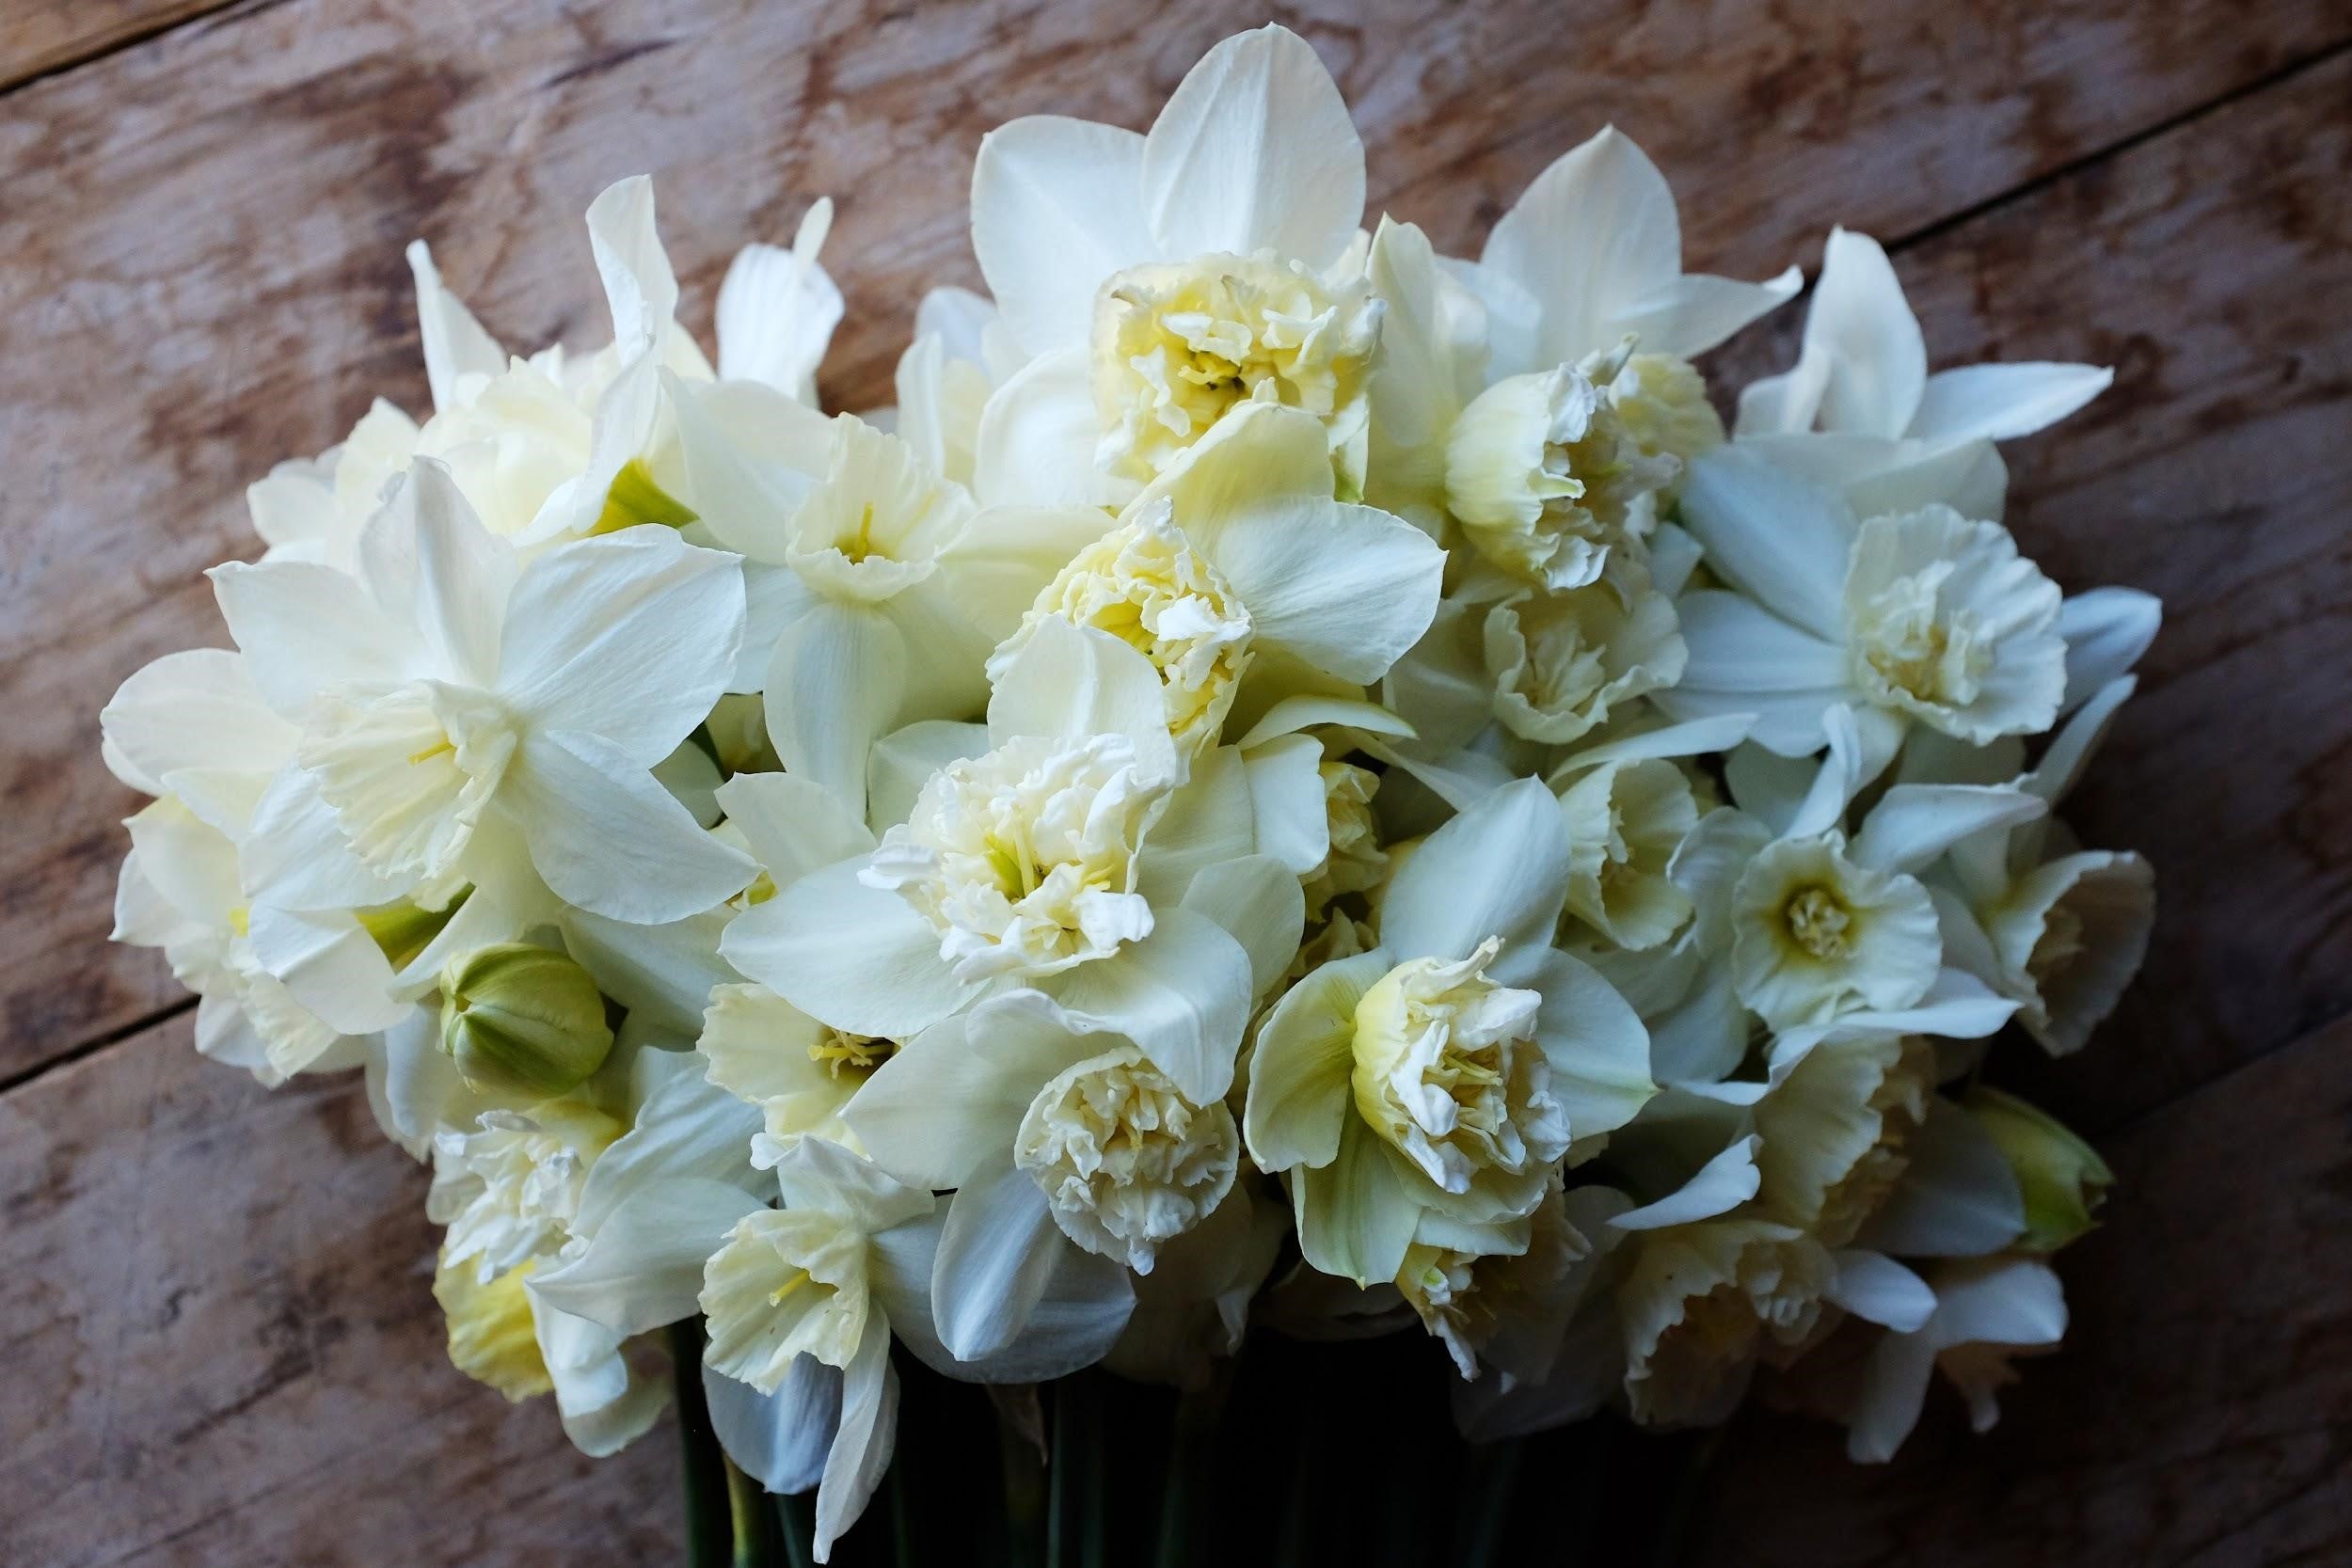 White Marvel Daffodil Bulbs - COMING SEPTEMBER 17TH!